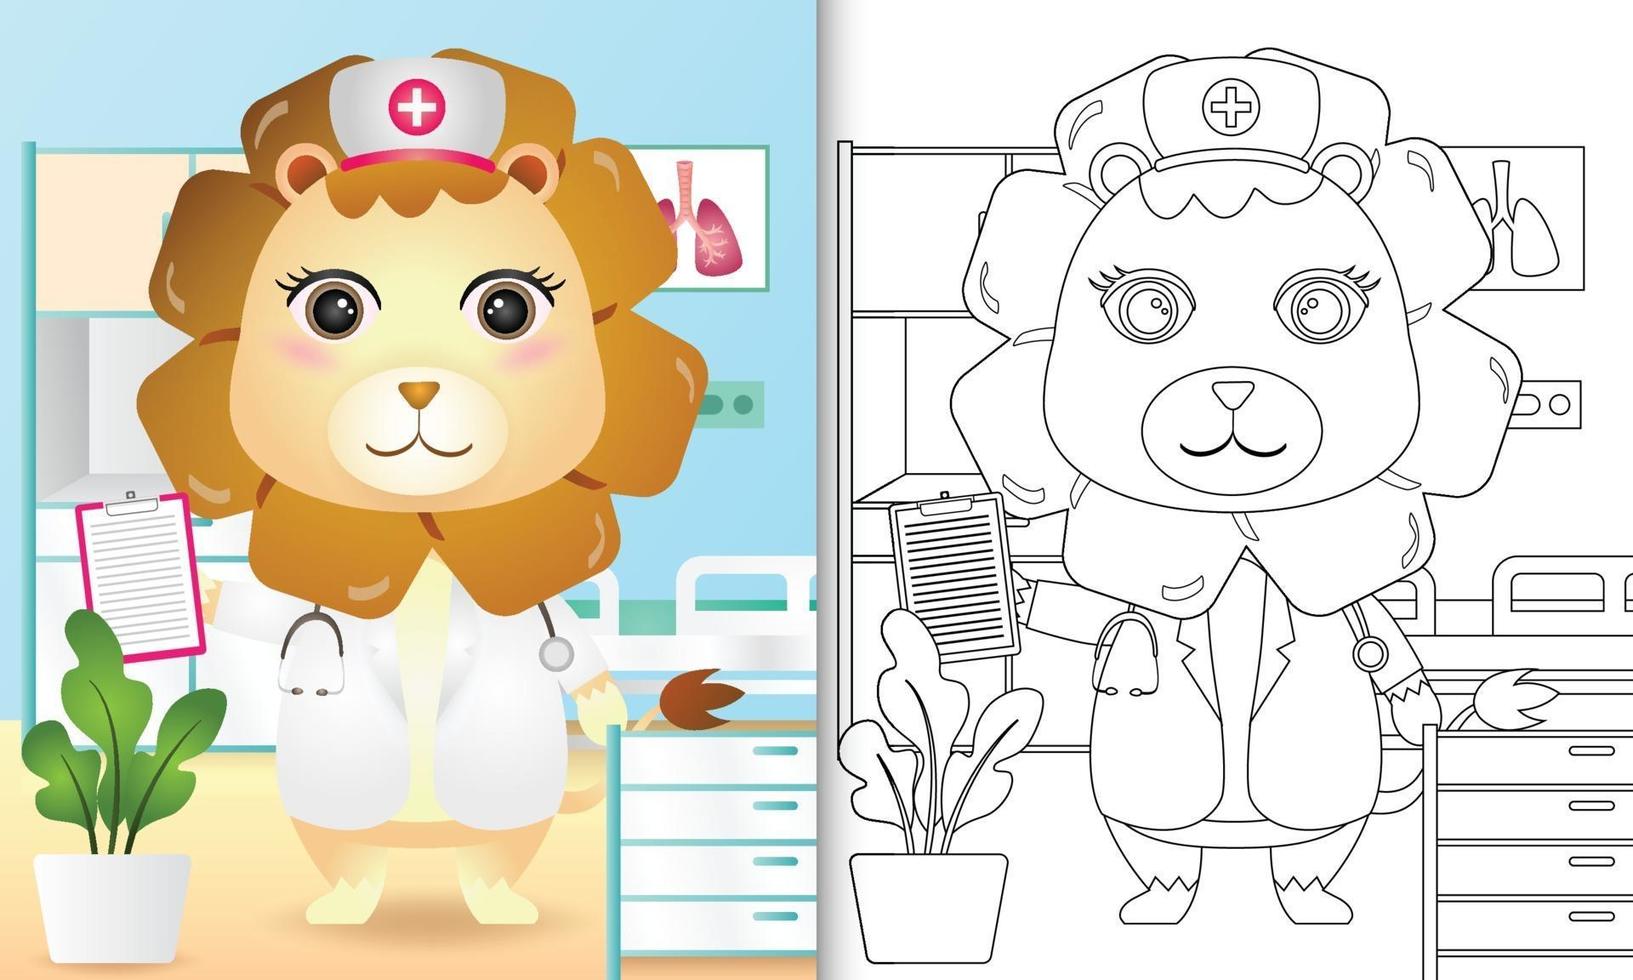 kleurboek voor kinderen met een schattige leeuw verpleegster karakter illustratie vector